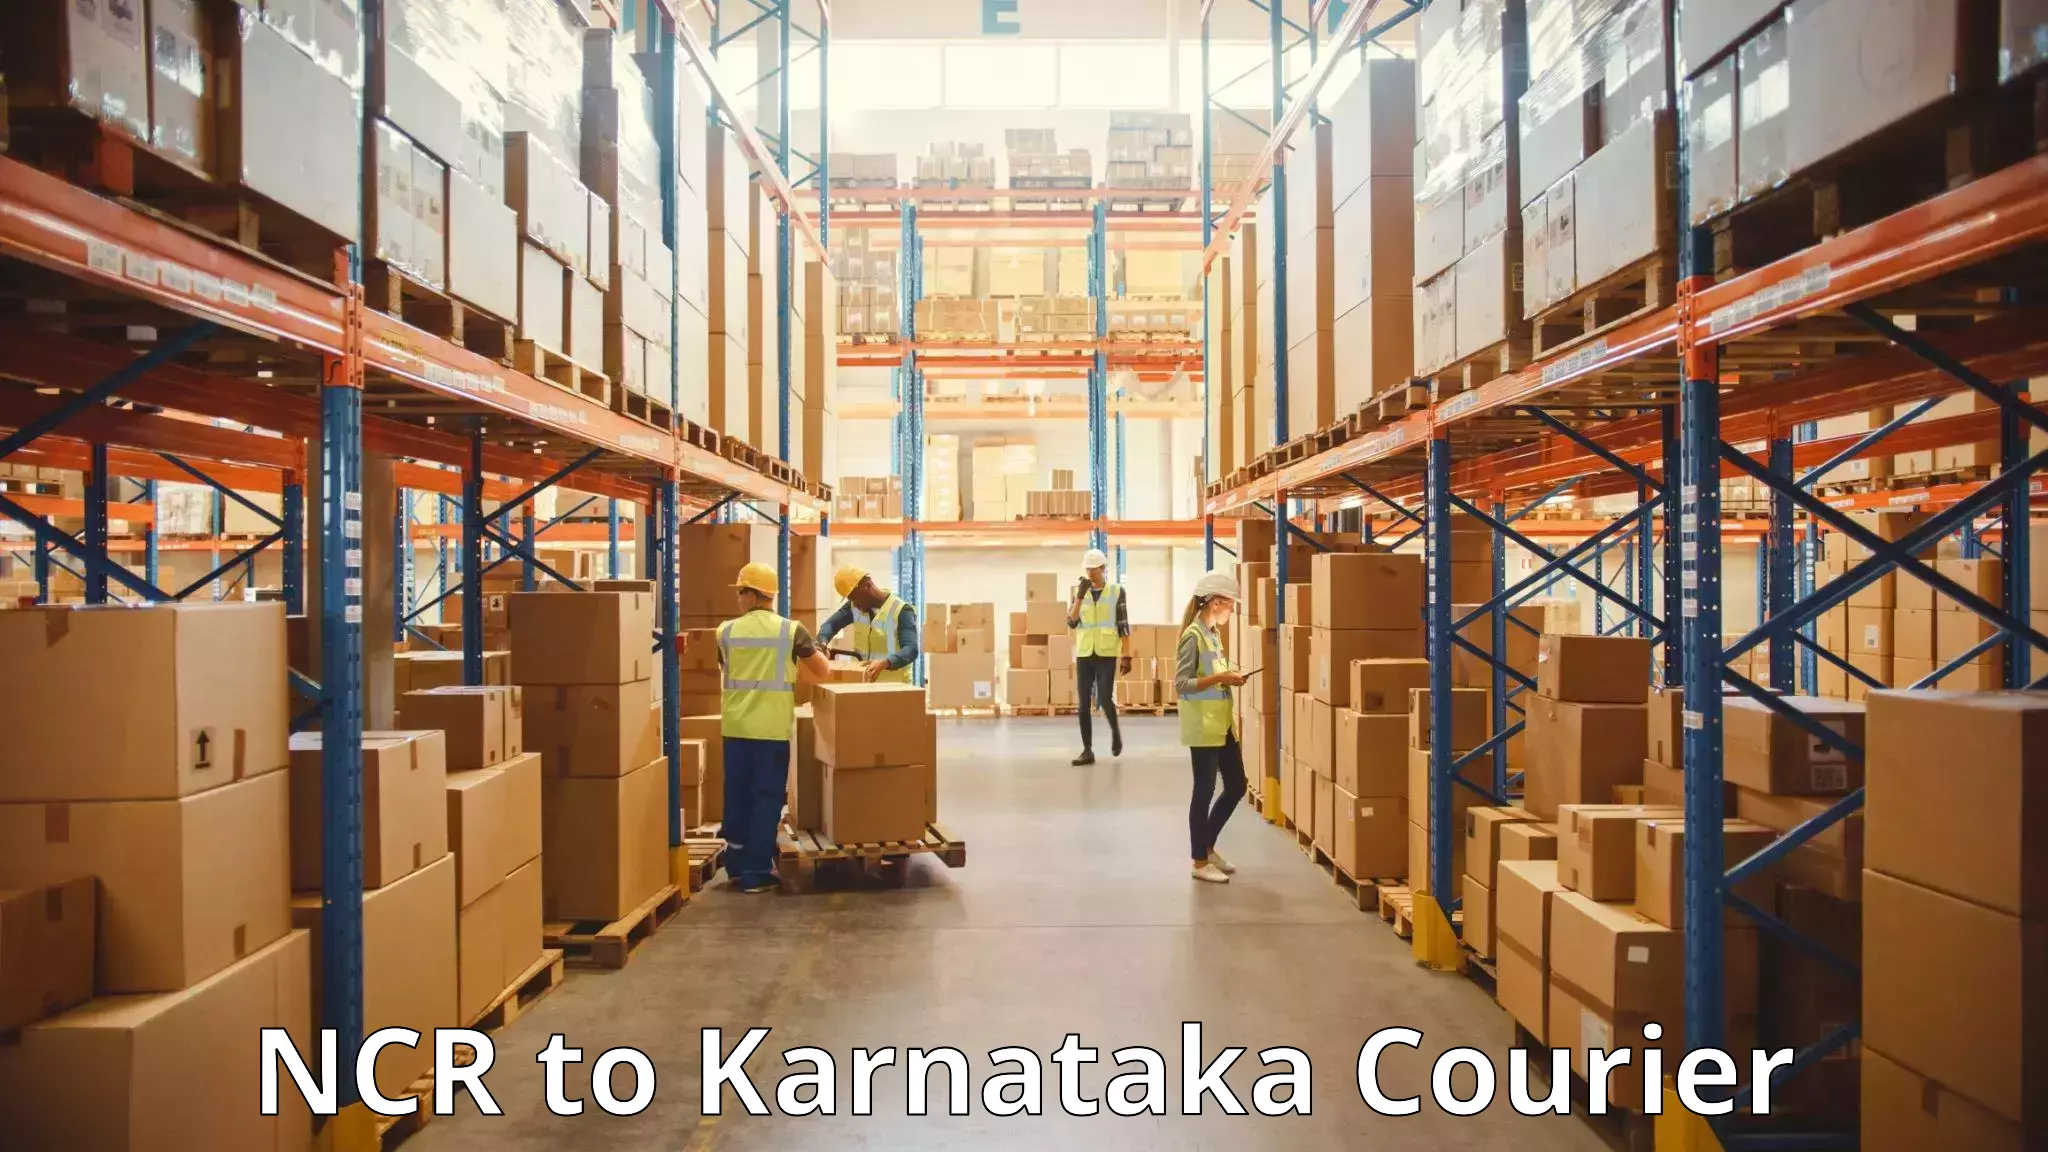 Baggage delivery solutions NCR to Karnataka